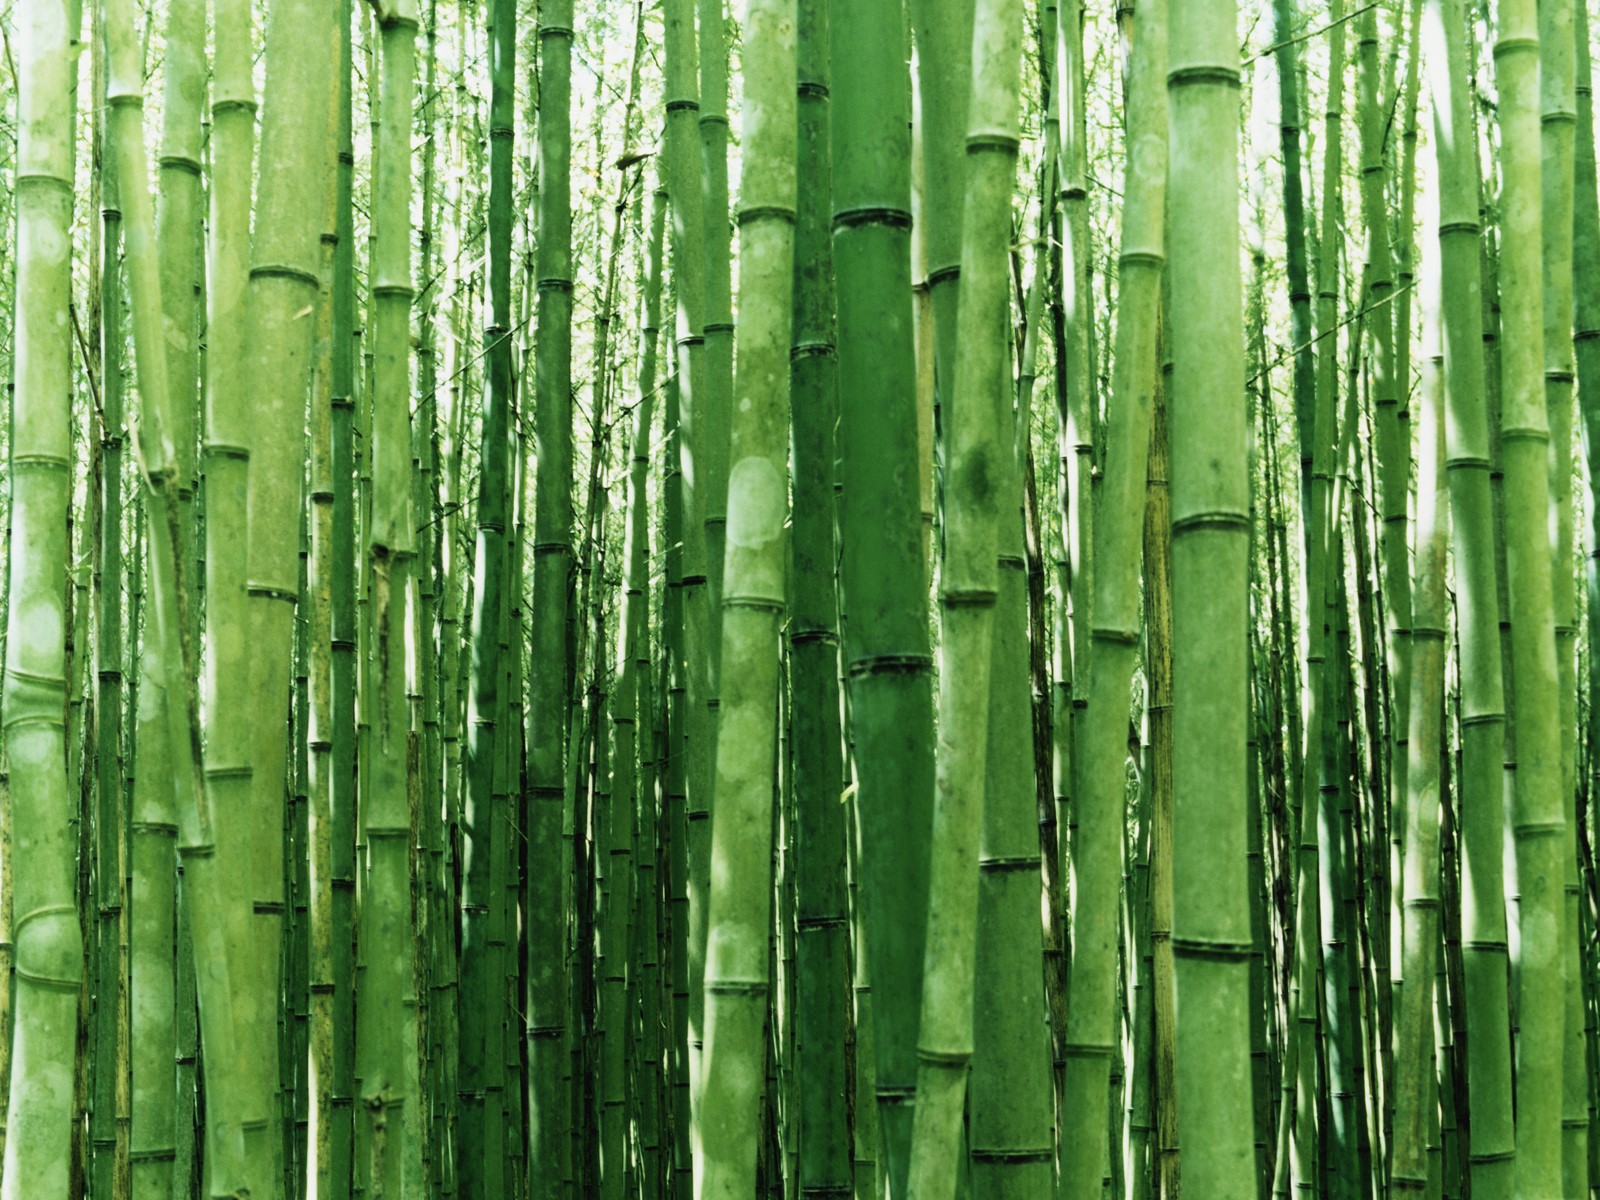 papier peint en bambou,vert,bambou,arbre,forêt,plante